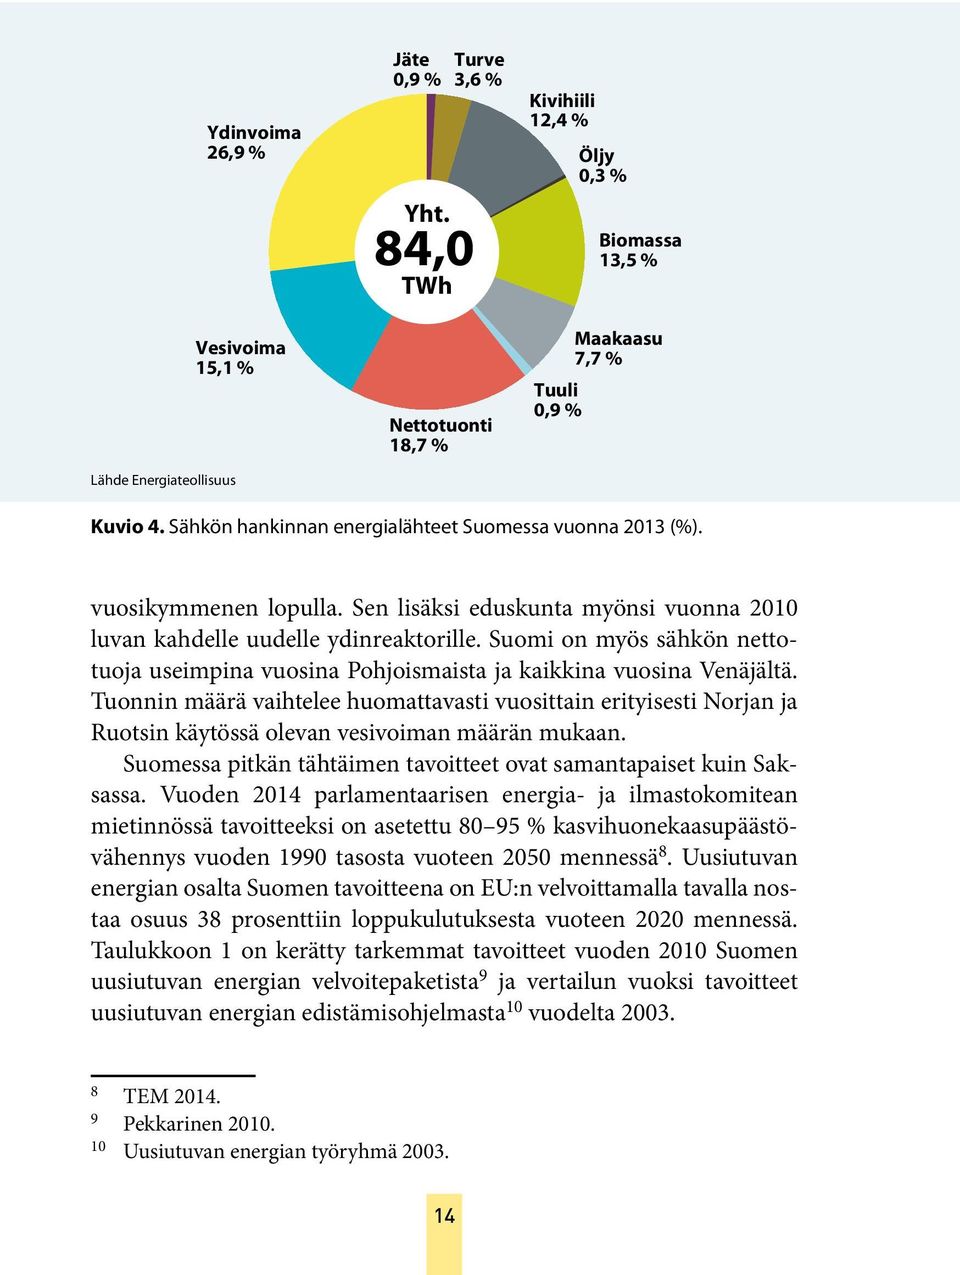 Suomi on myös sähkön nettotuoja useimpina vuosina Pohjoismaista ja kaikkina vuosina Venäjältä.